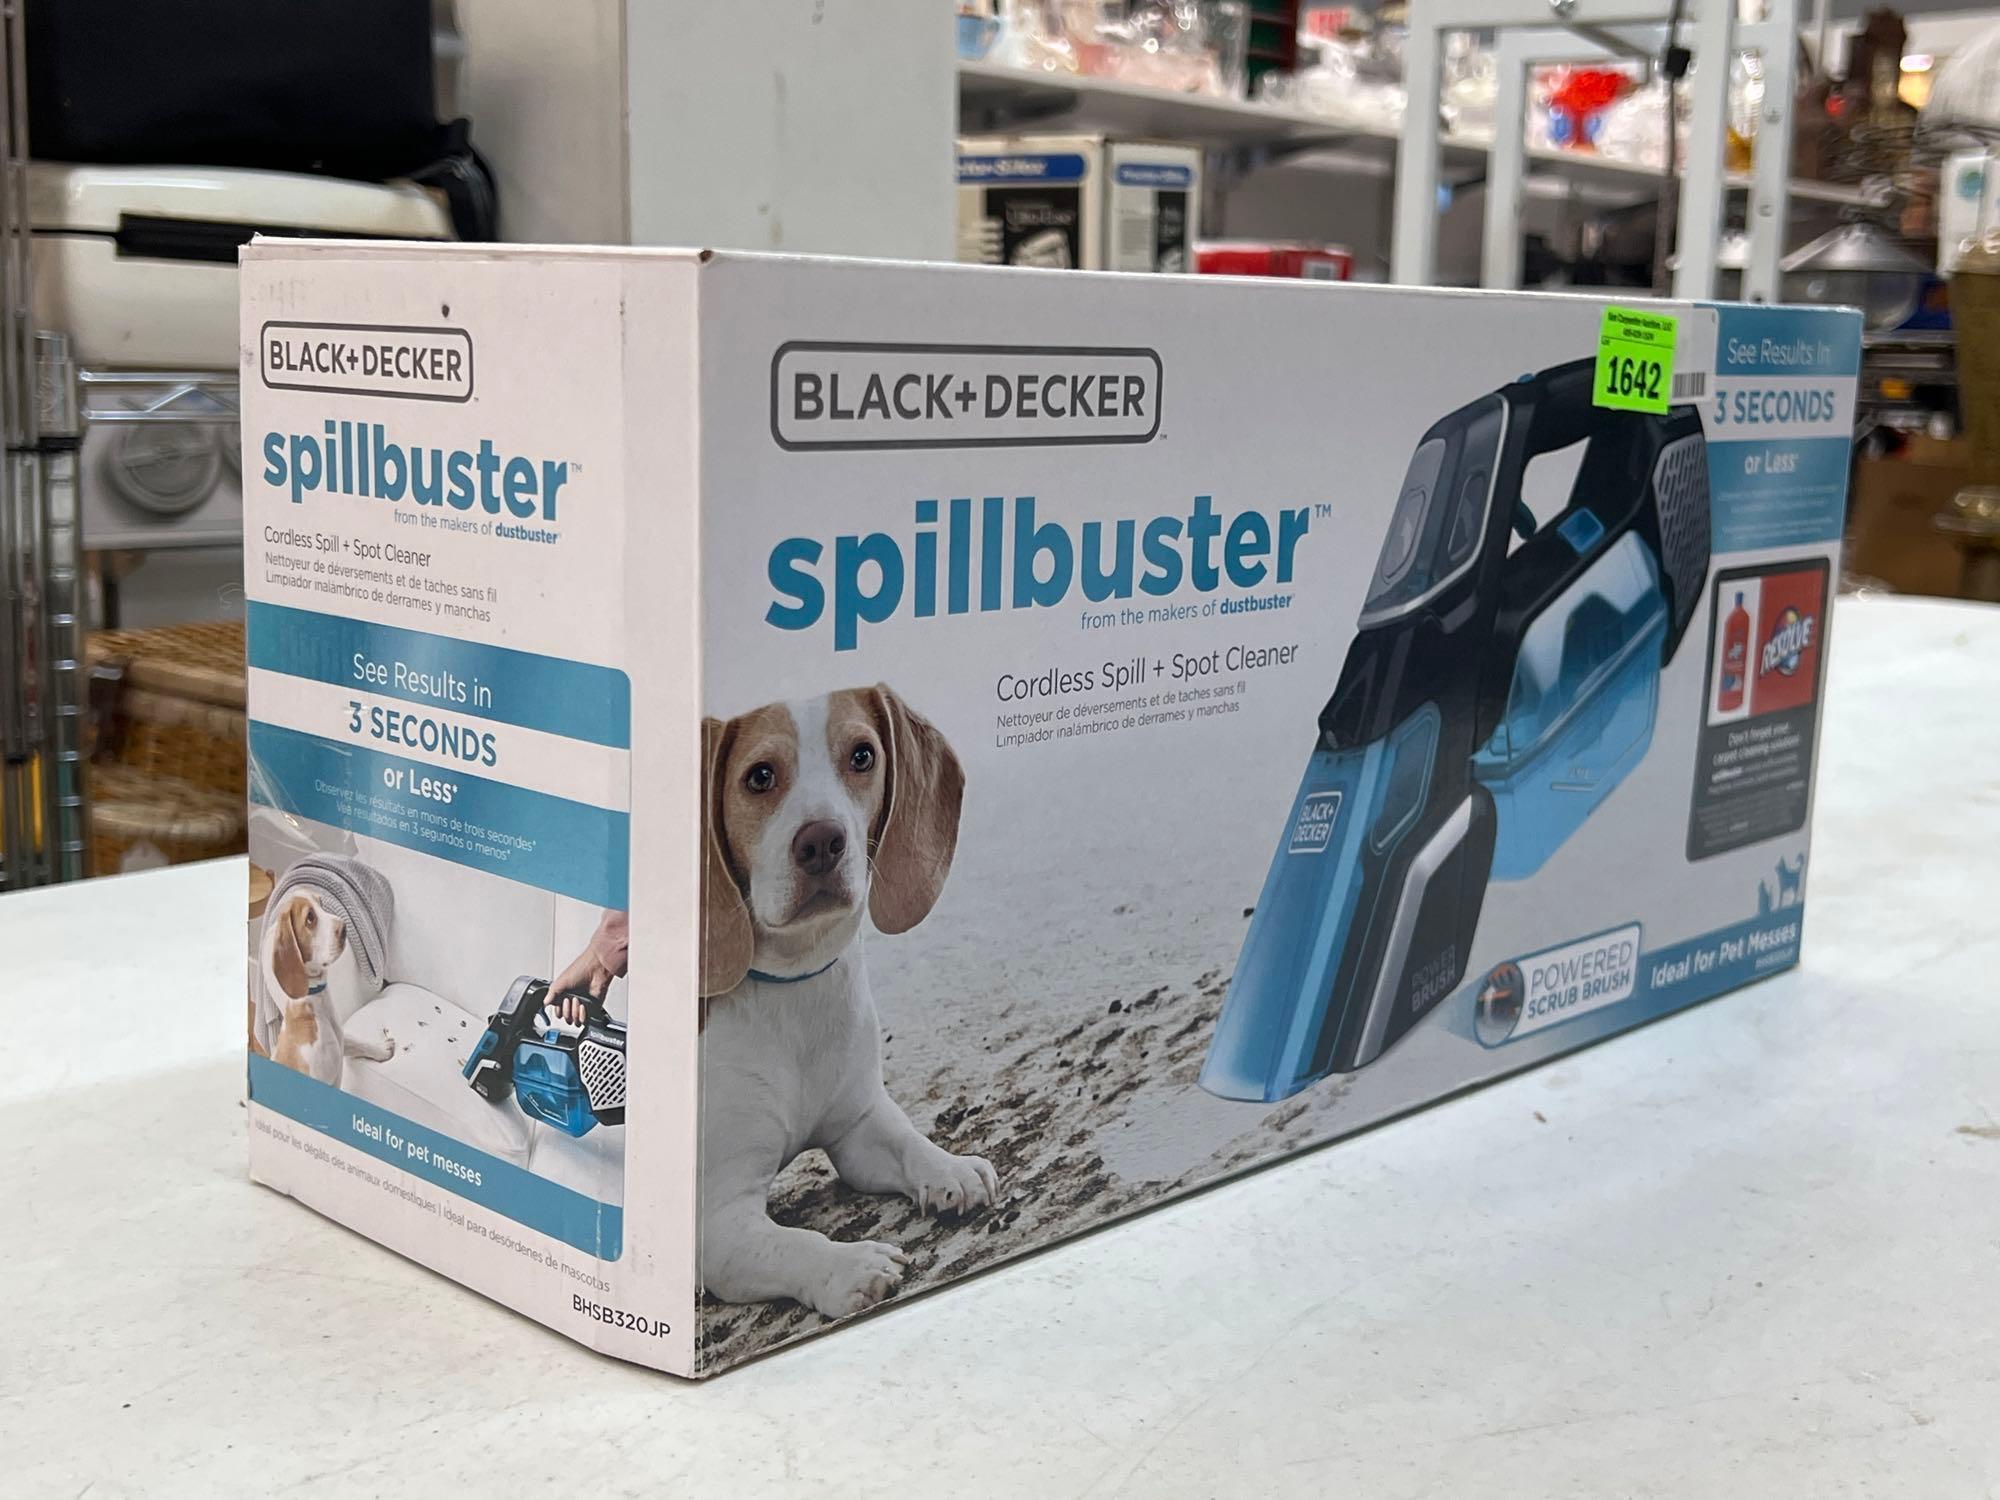 Black & Decker Spillbuster Cordless Spill + Spot Cleaner BHSB320JP